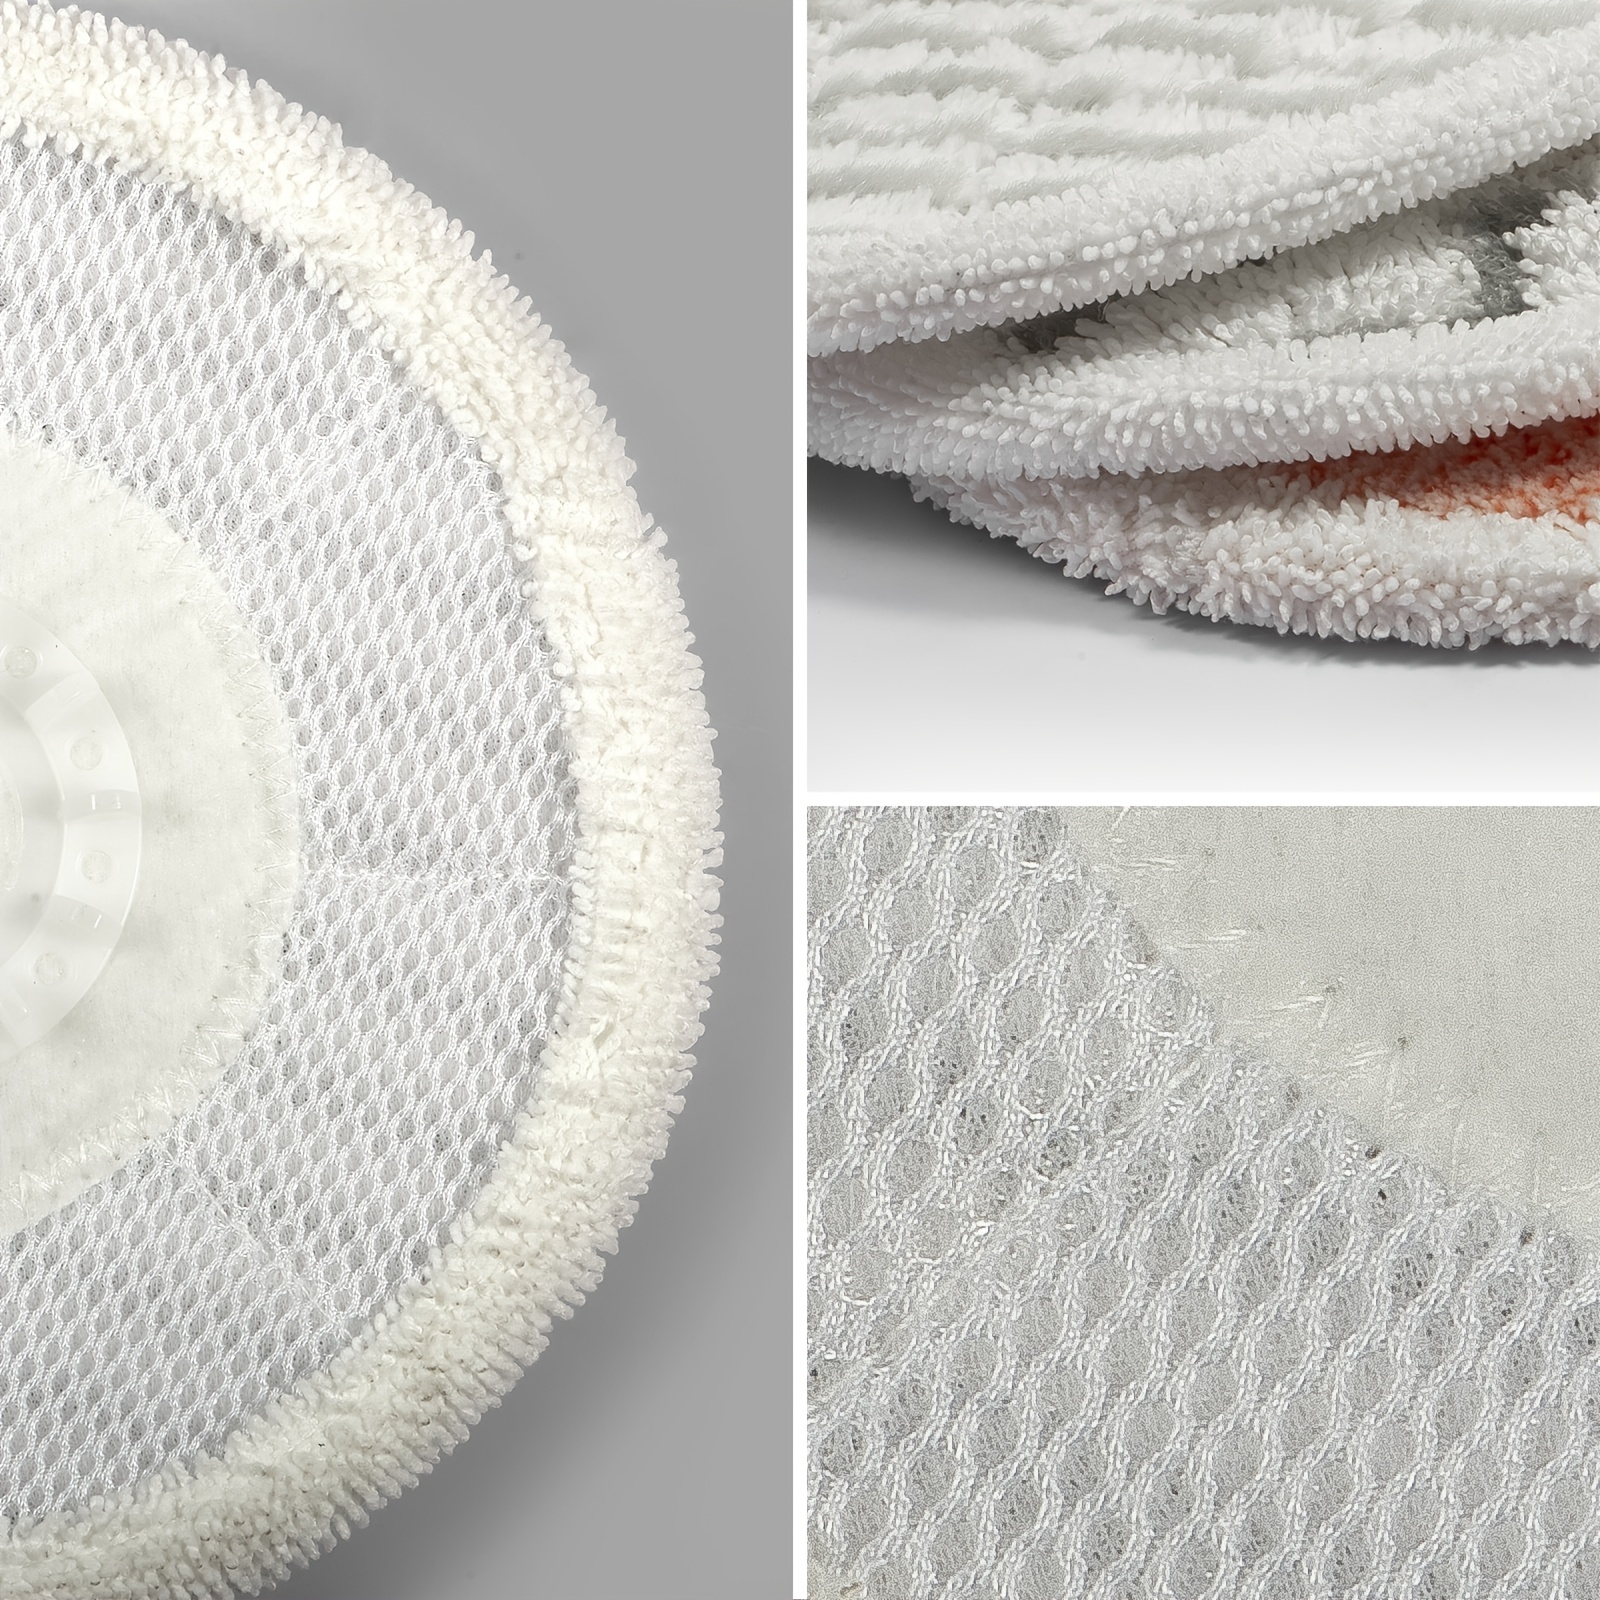 Paquete de 6 almohadillas de microfibra para mopa, compatibles con